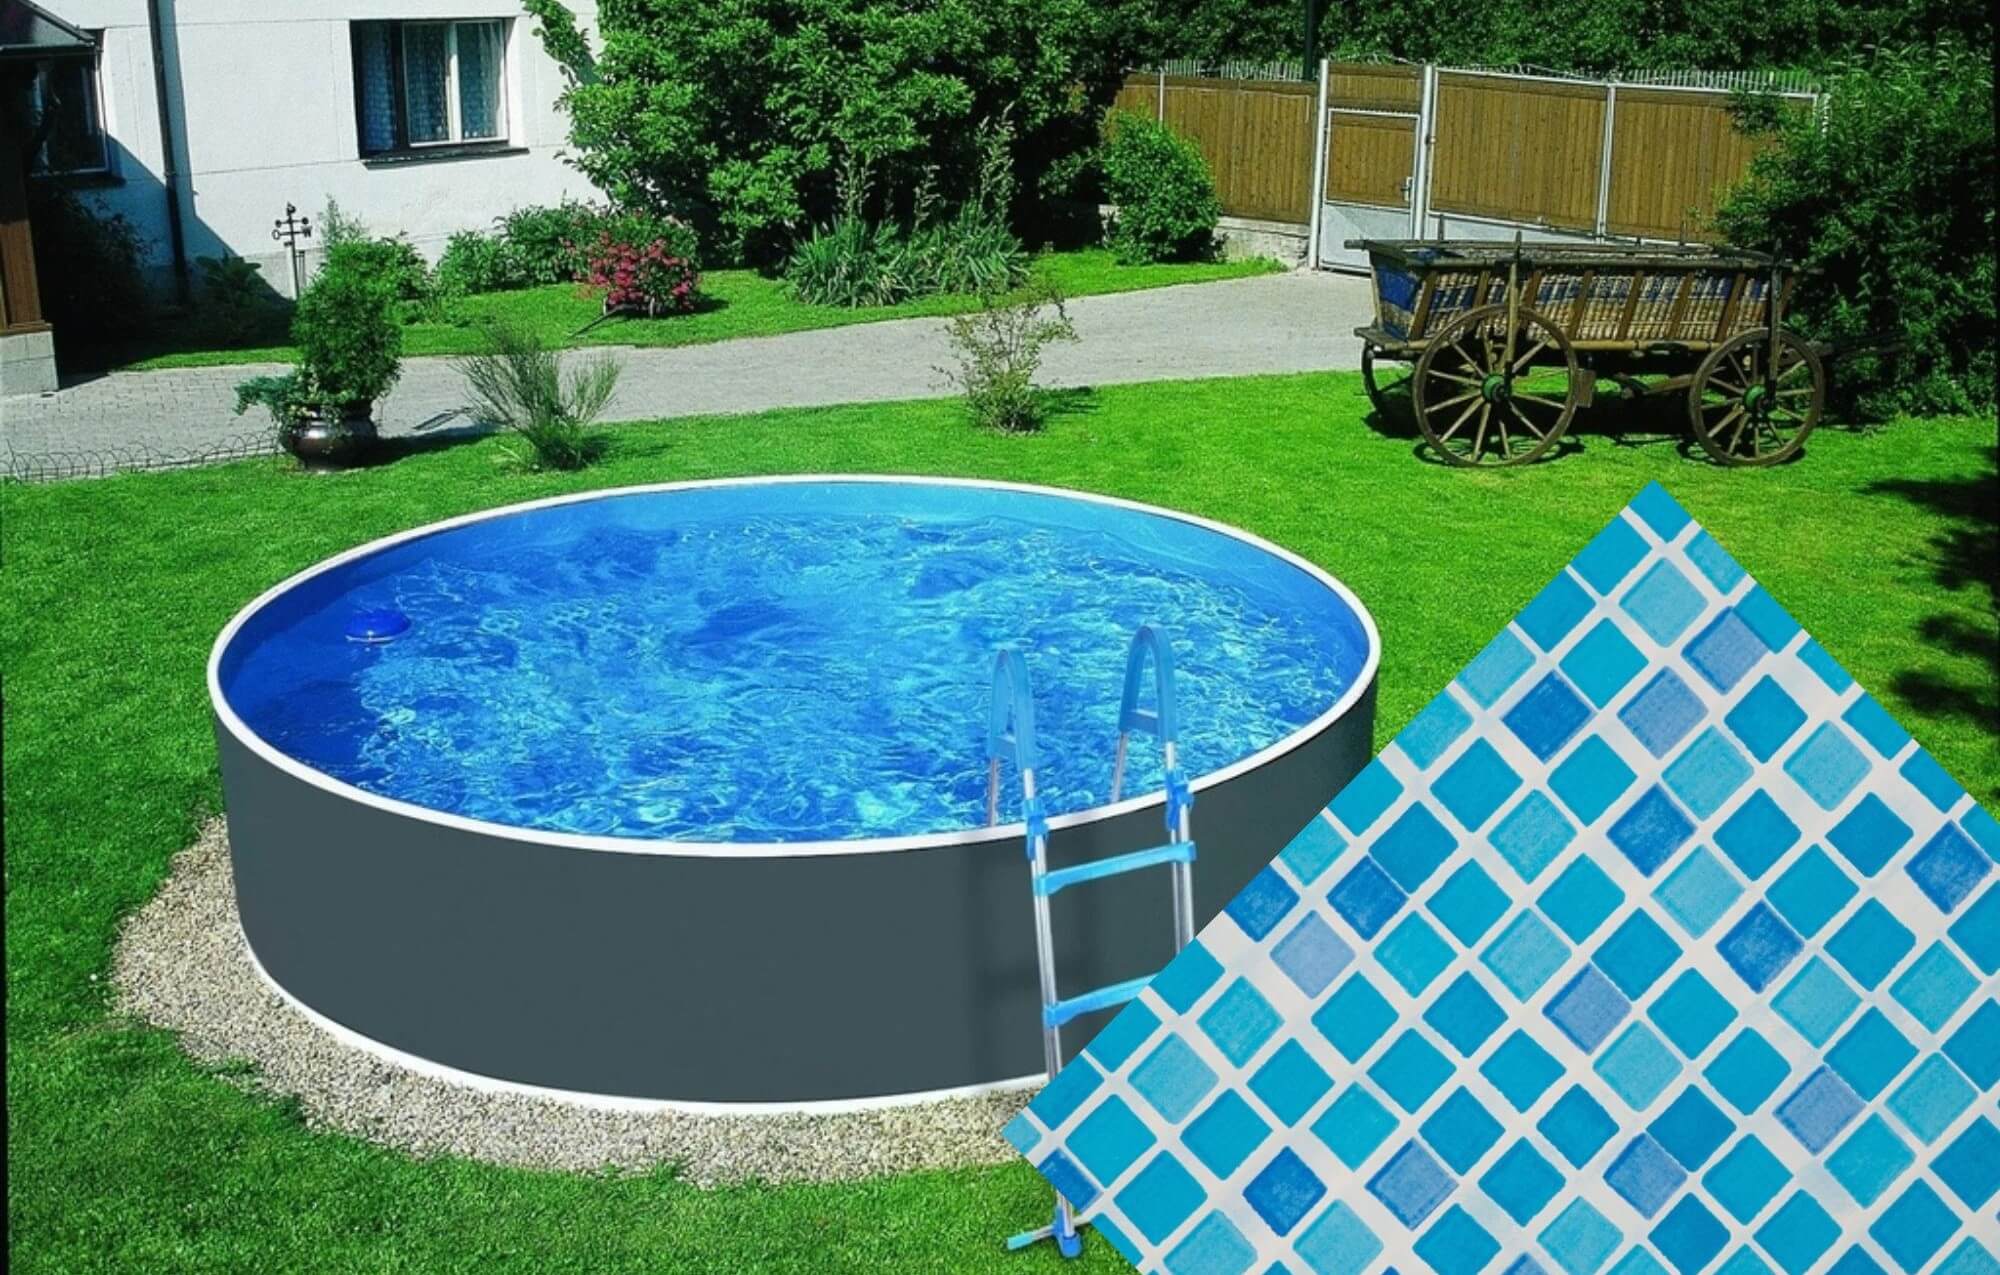 Planet Pool Náhradní bazénová fólie Mosaic pro bazén průměr 3,6 m x 1,1 m